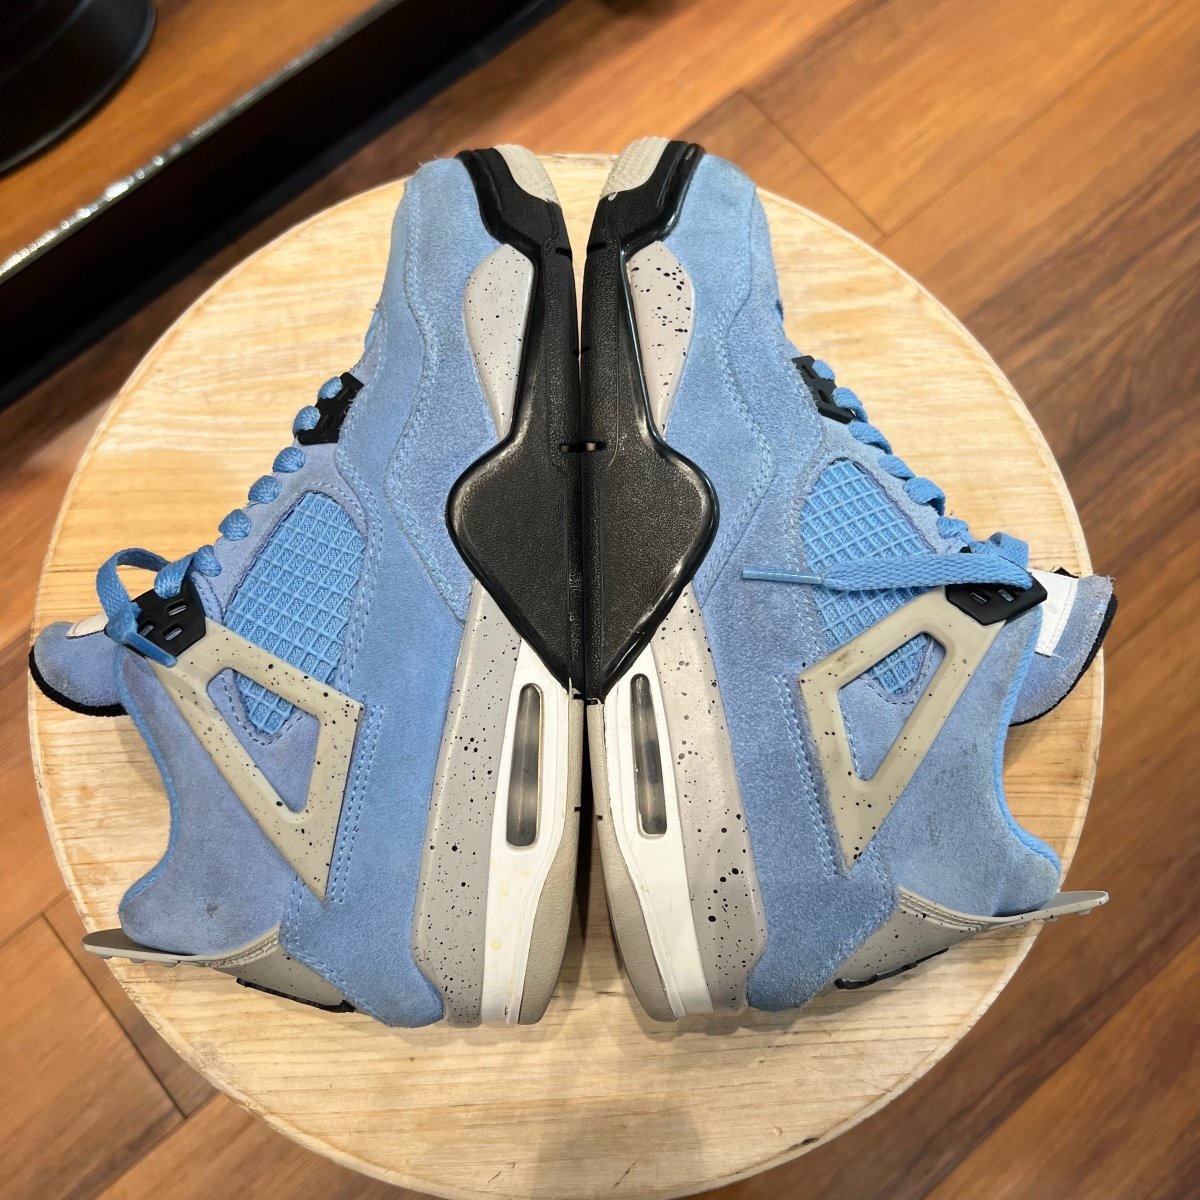 Jordan 4 Retro University Blue - Gently Enjoyed (Used) Grade School 6.5 - Mid Sneaker - Jordan - Jawns on Fire - sneakers